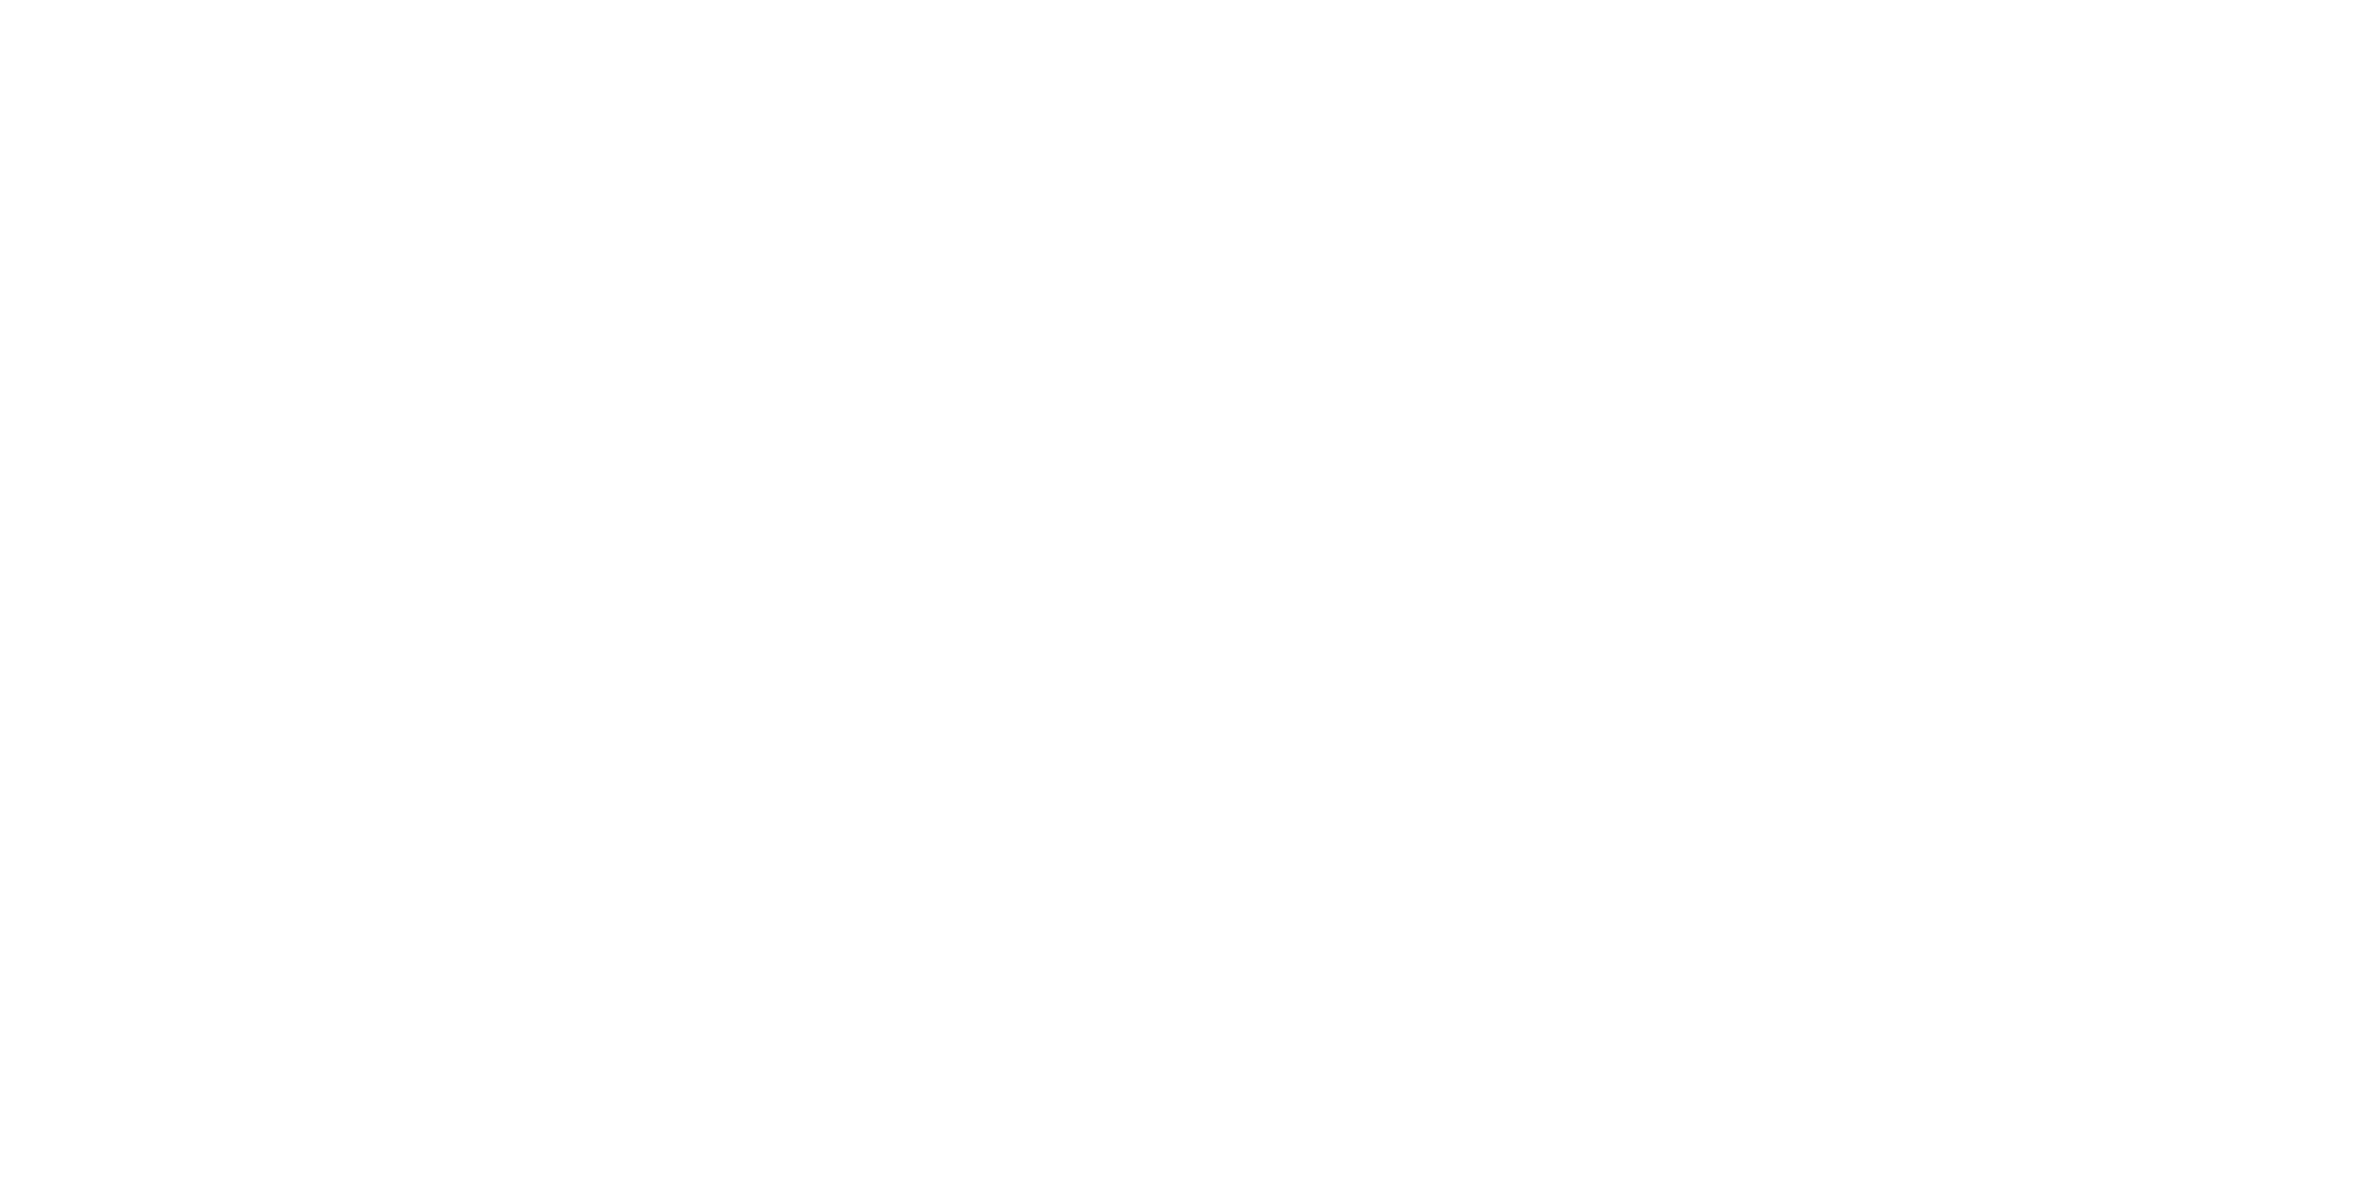 Cinia palvelinkumppani